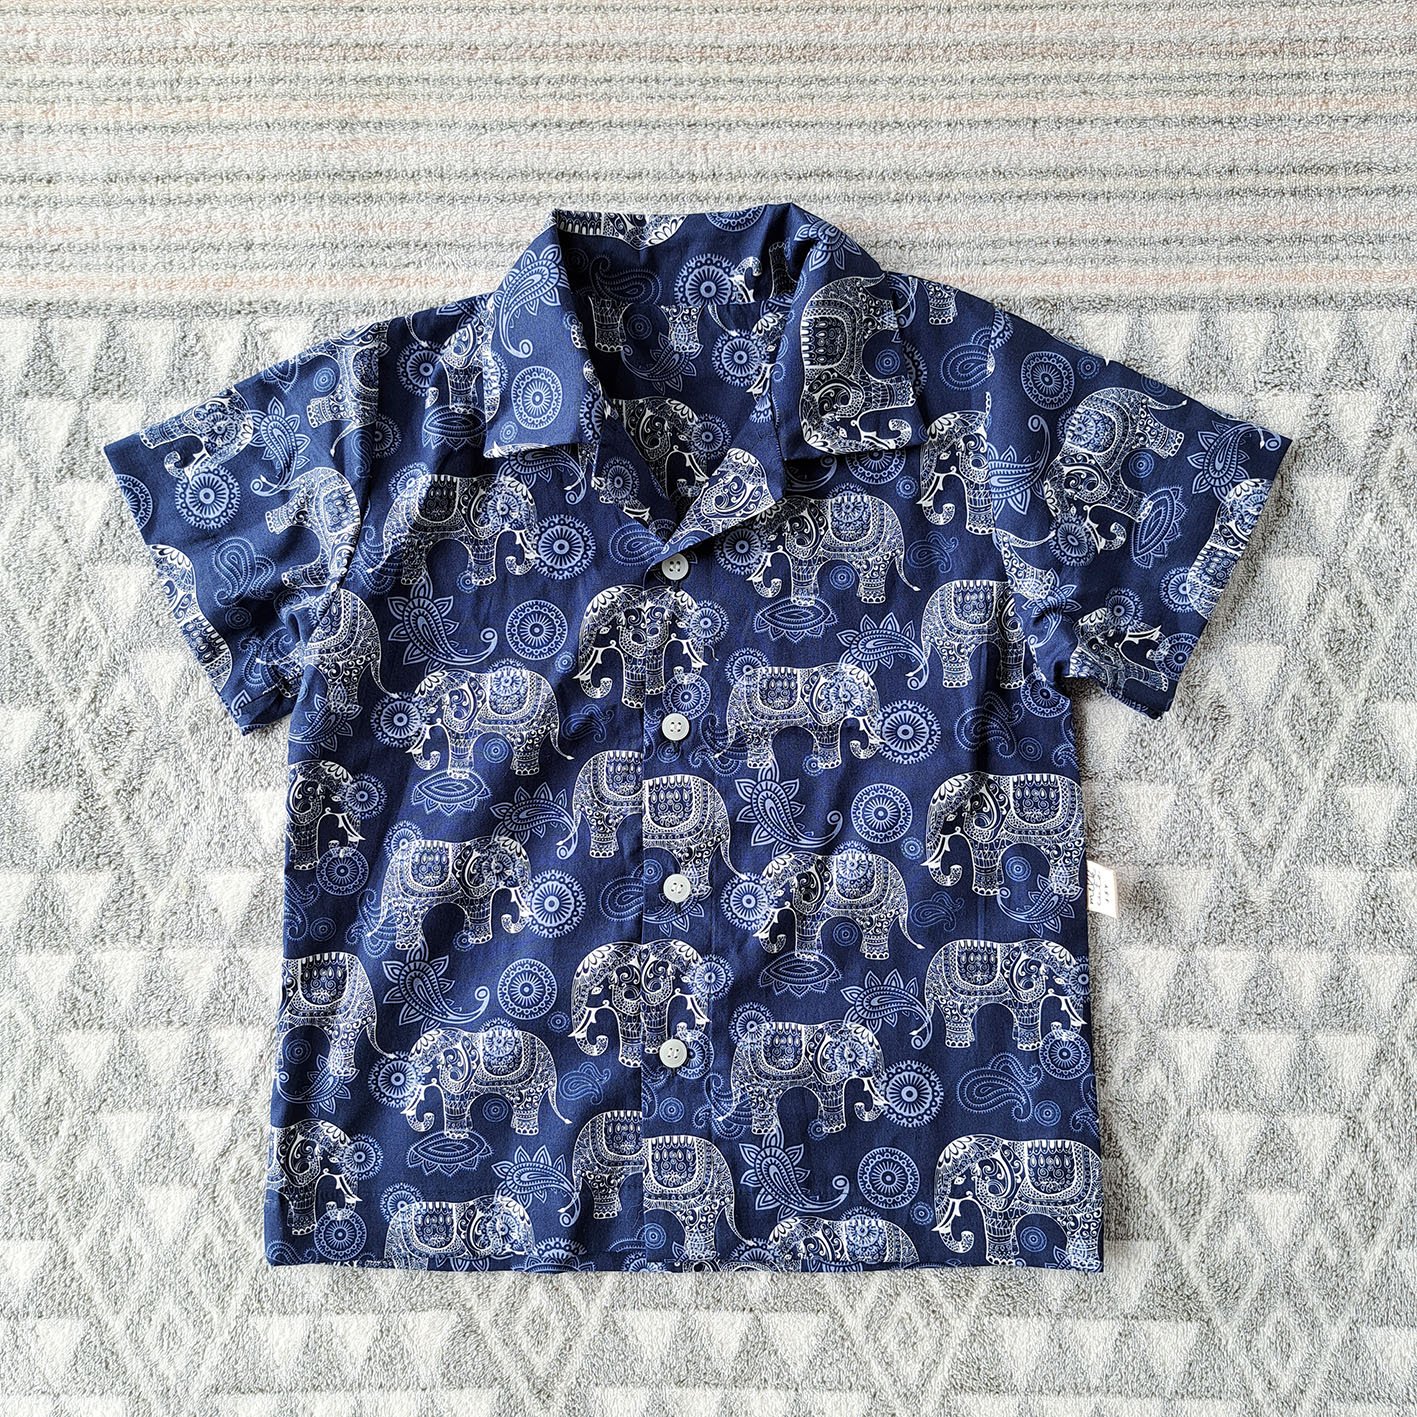 เด็กชาย-หญิง เสื้อเชิ๊ต 100% ผ้าคอตตอนพิมพ์ลายช้างสีน้ำเงินกรม